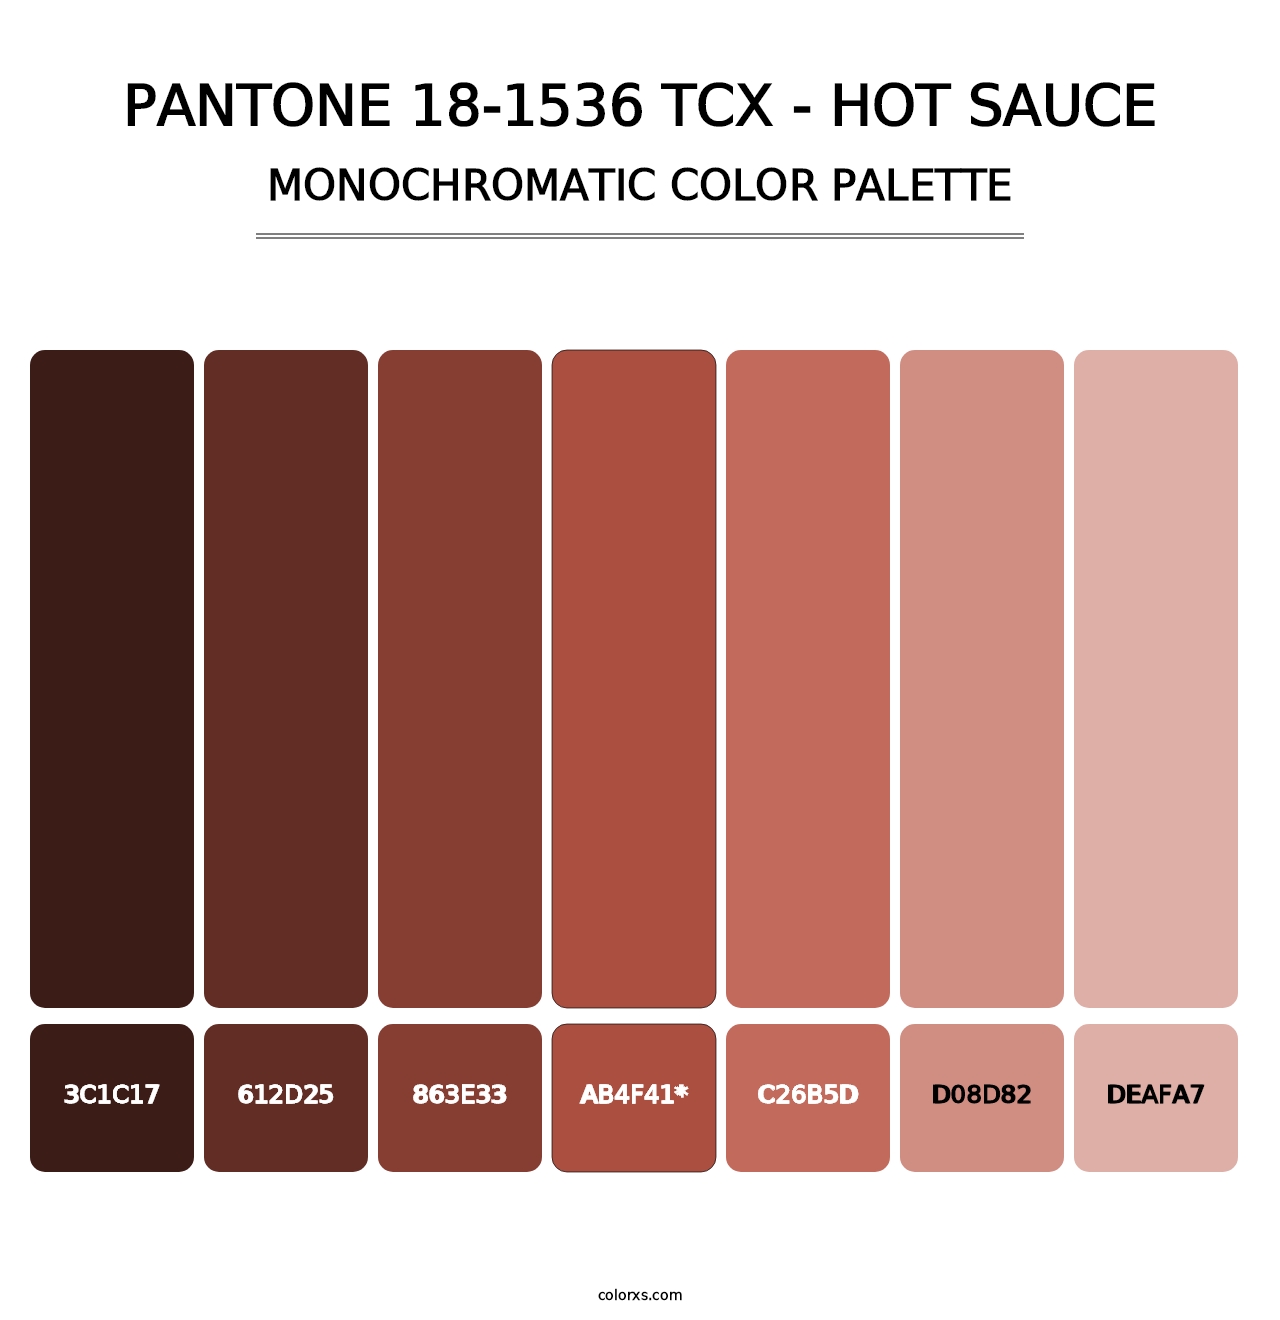 PANTONE 18-1536 TCX - Hot Sauce - Monochromatic Color Palette